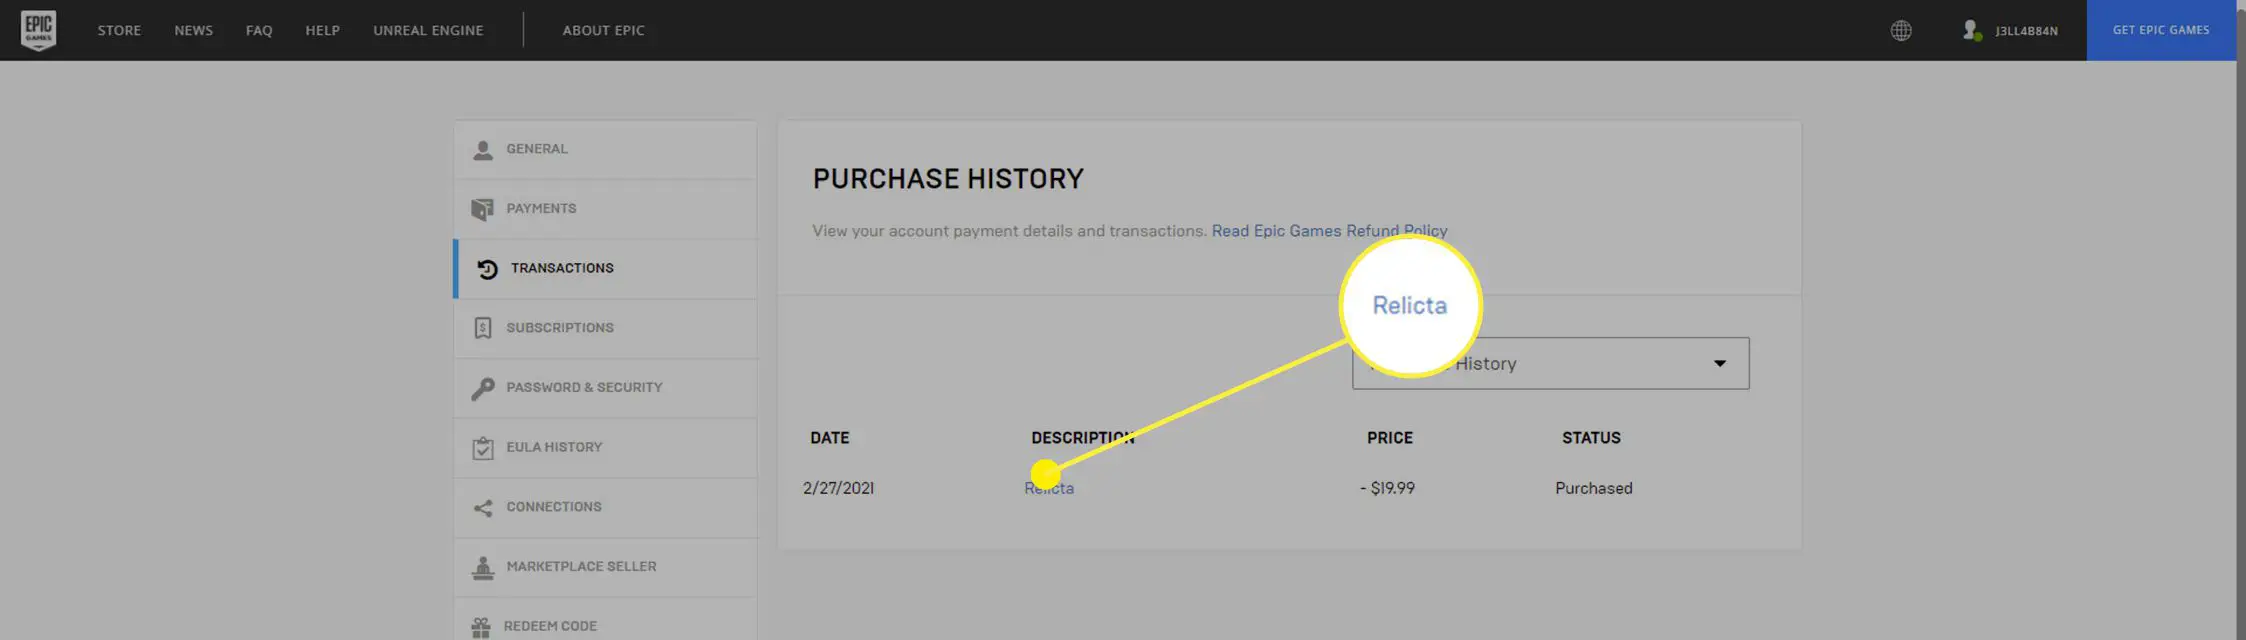 O histórico de compras na Epic Games Store.